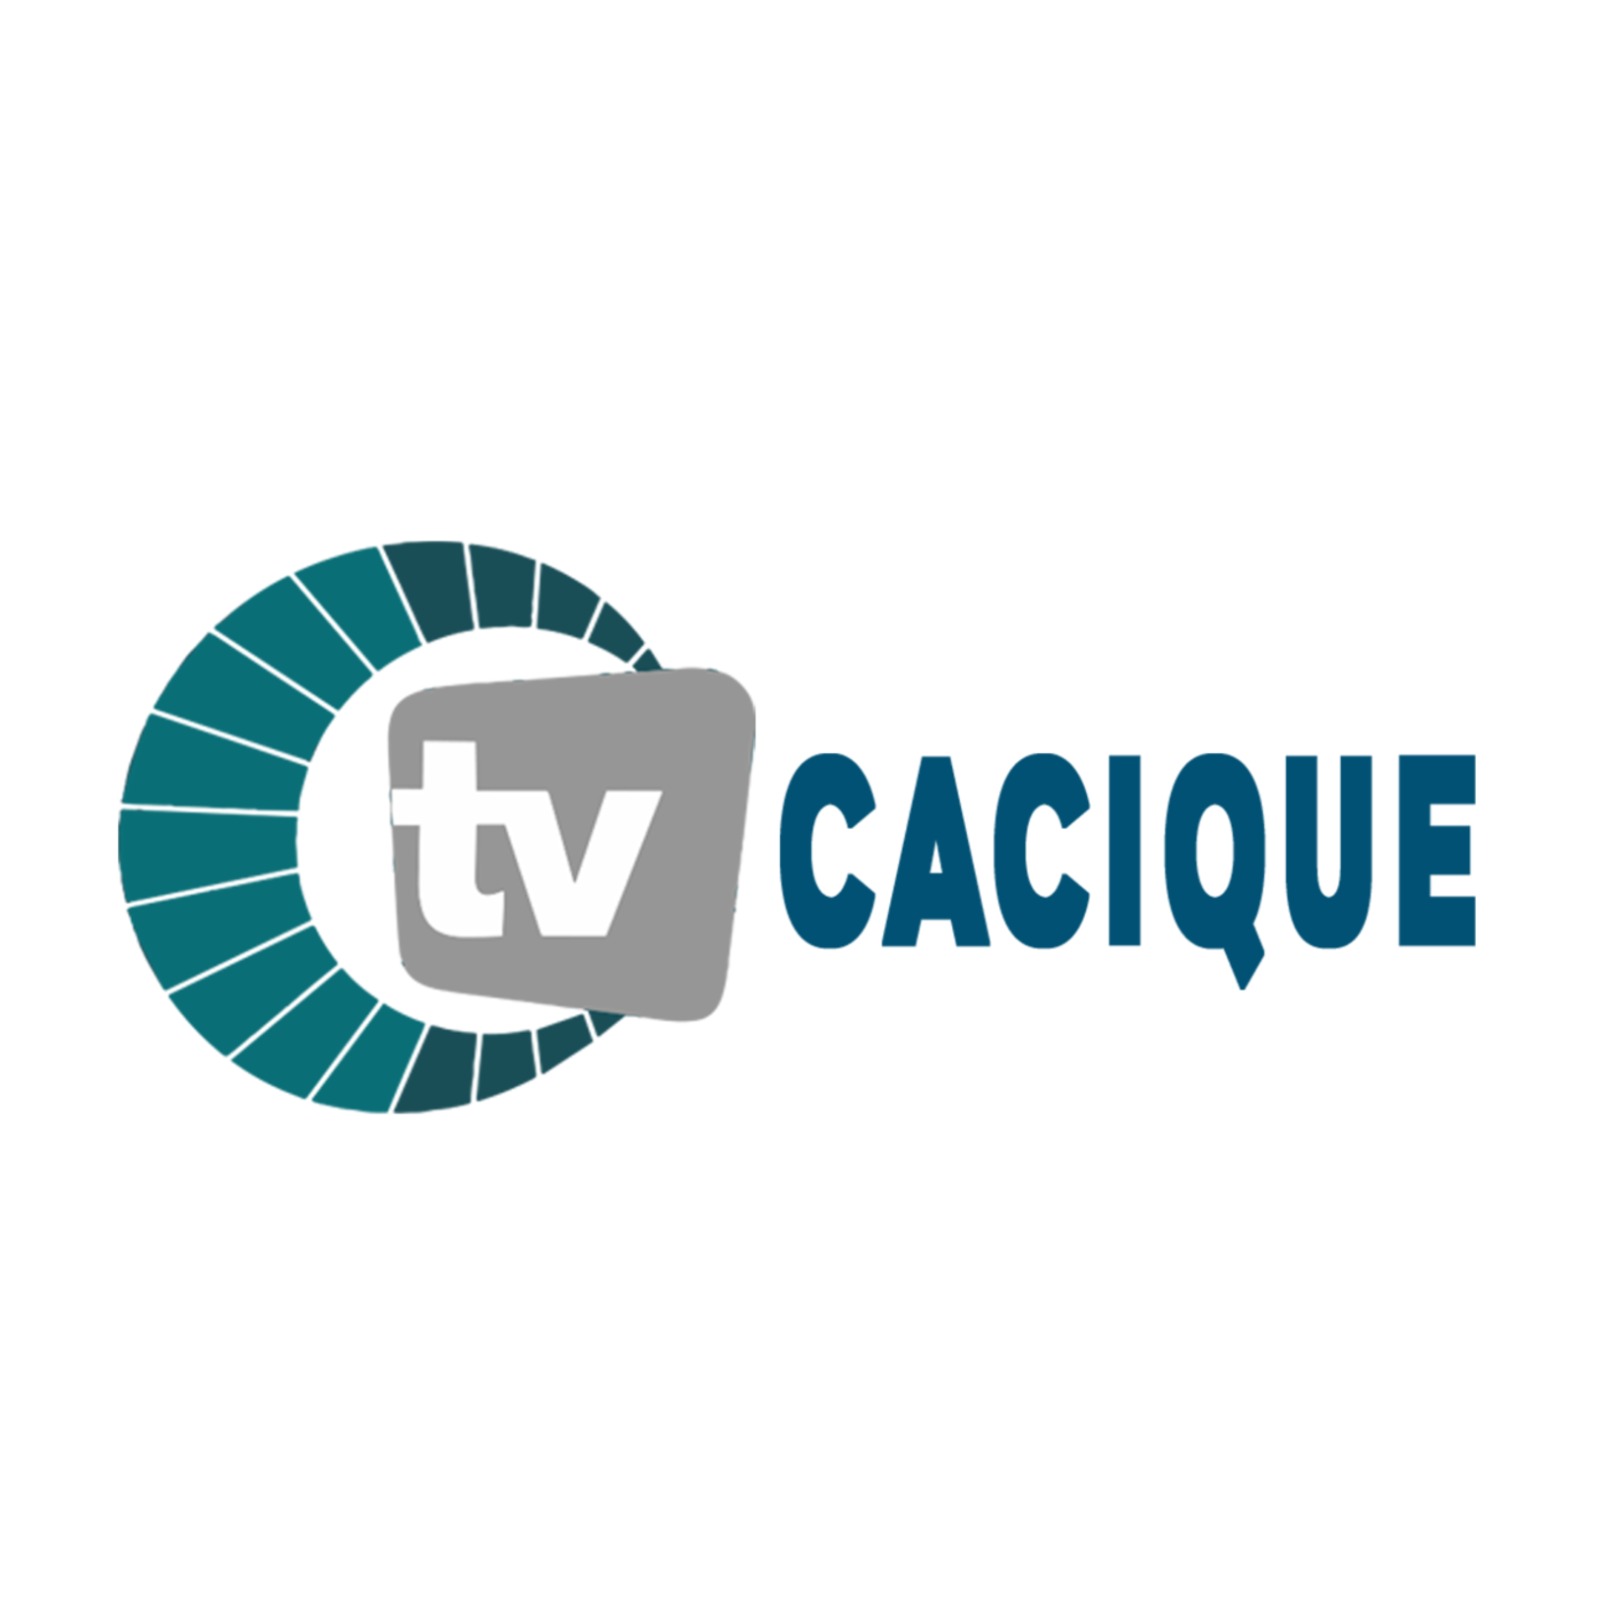 Tv Cacique